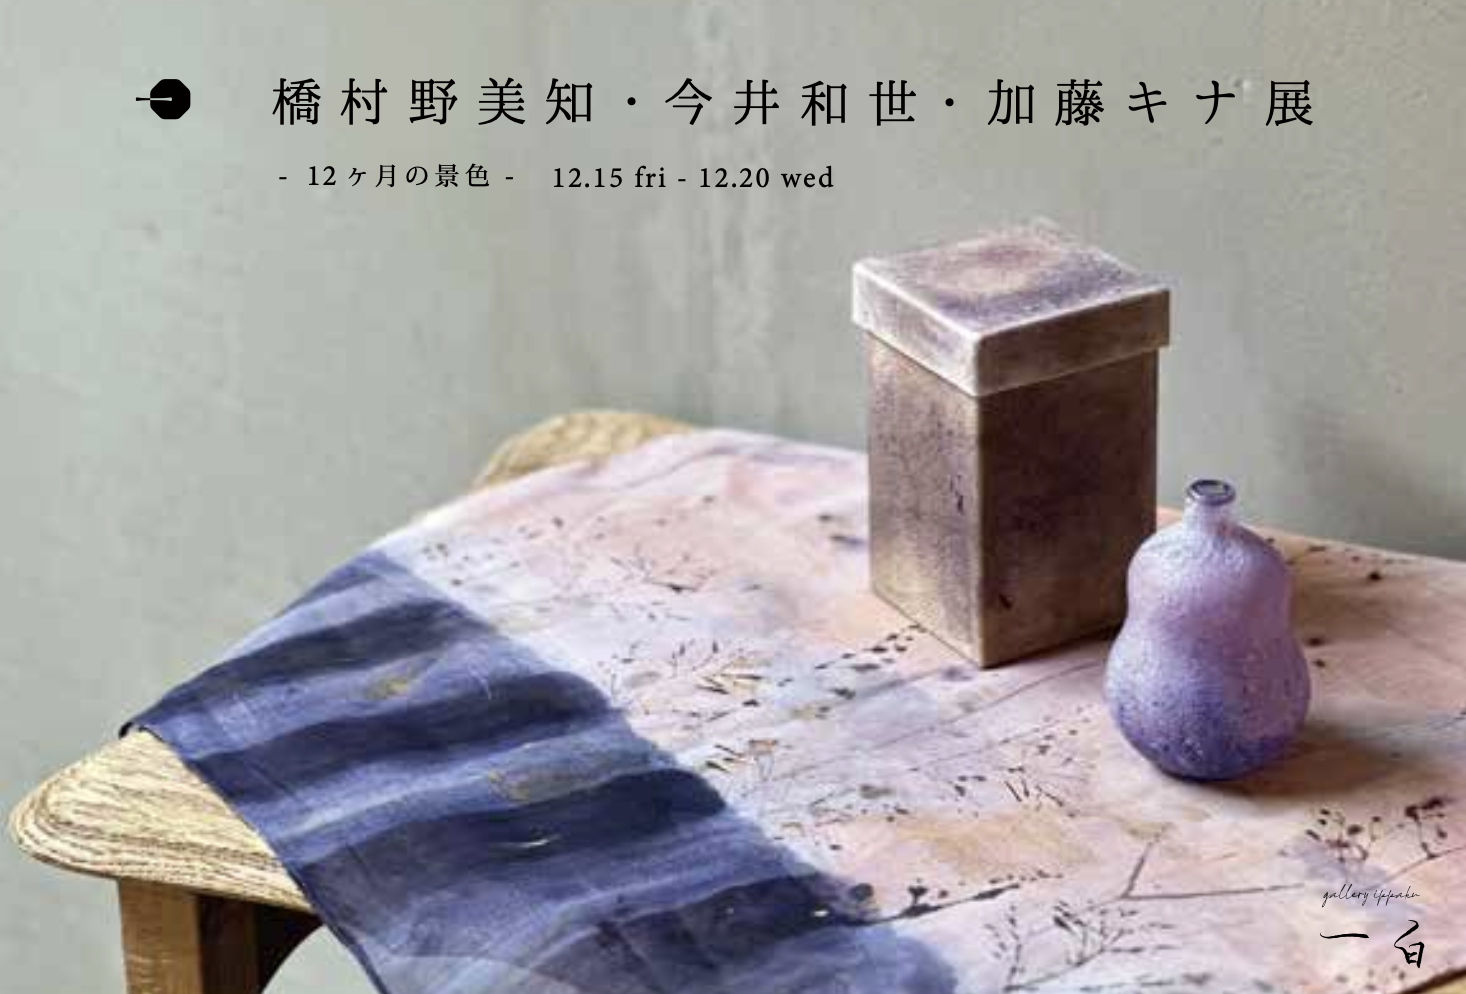 【12ヶ月の景色】橋村野美知・今井和世・加藤キナ 展 本日から始まります